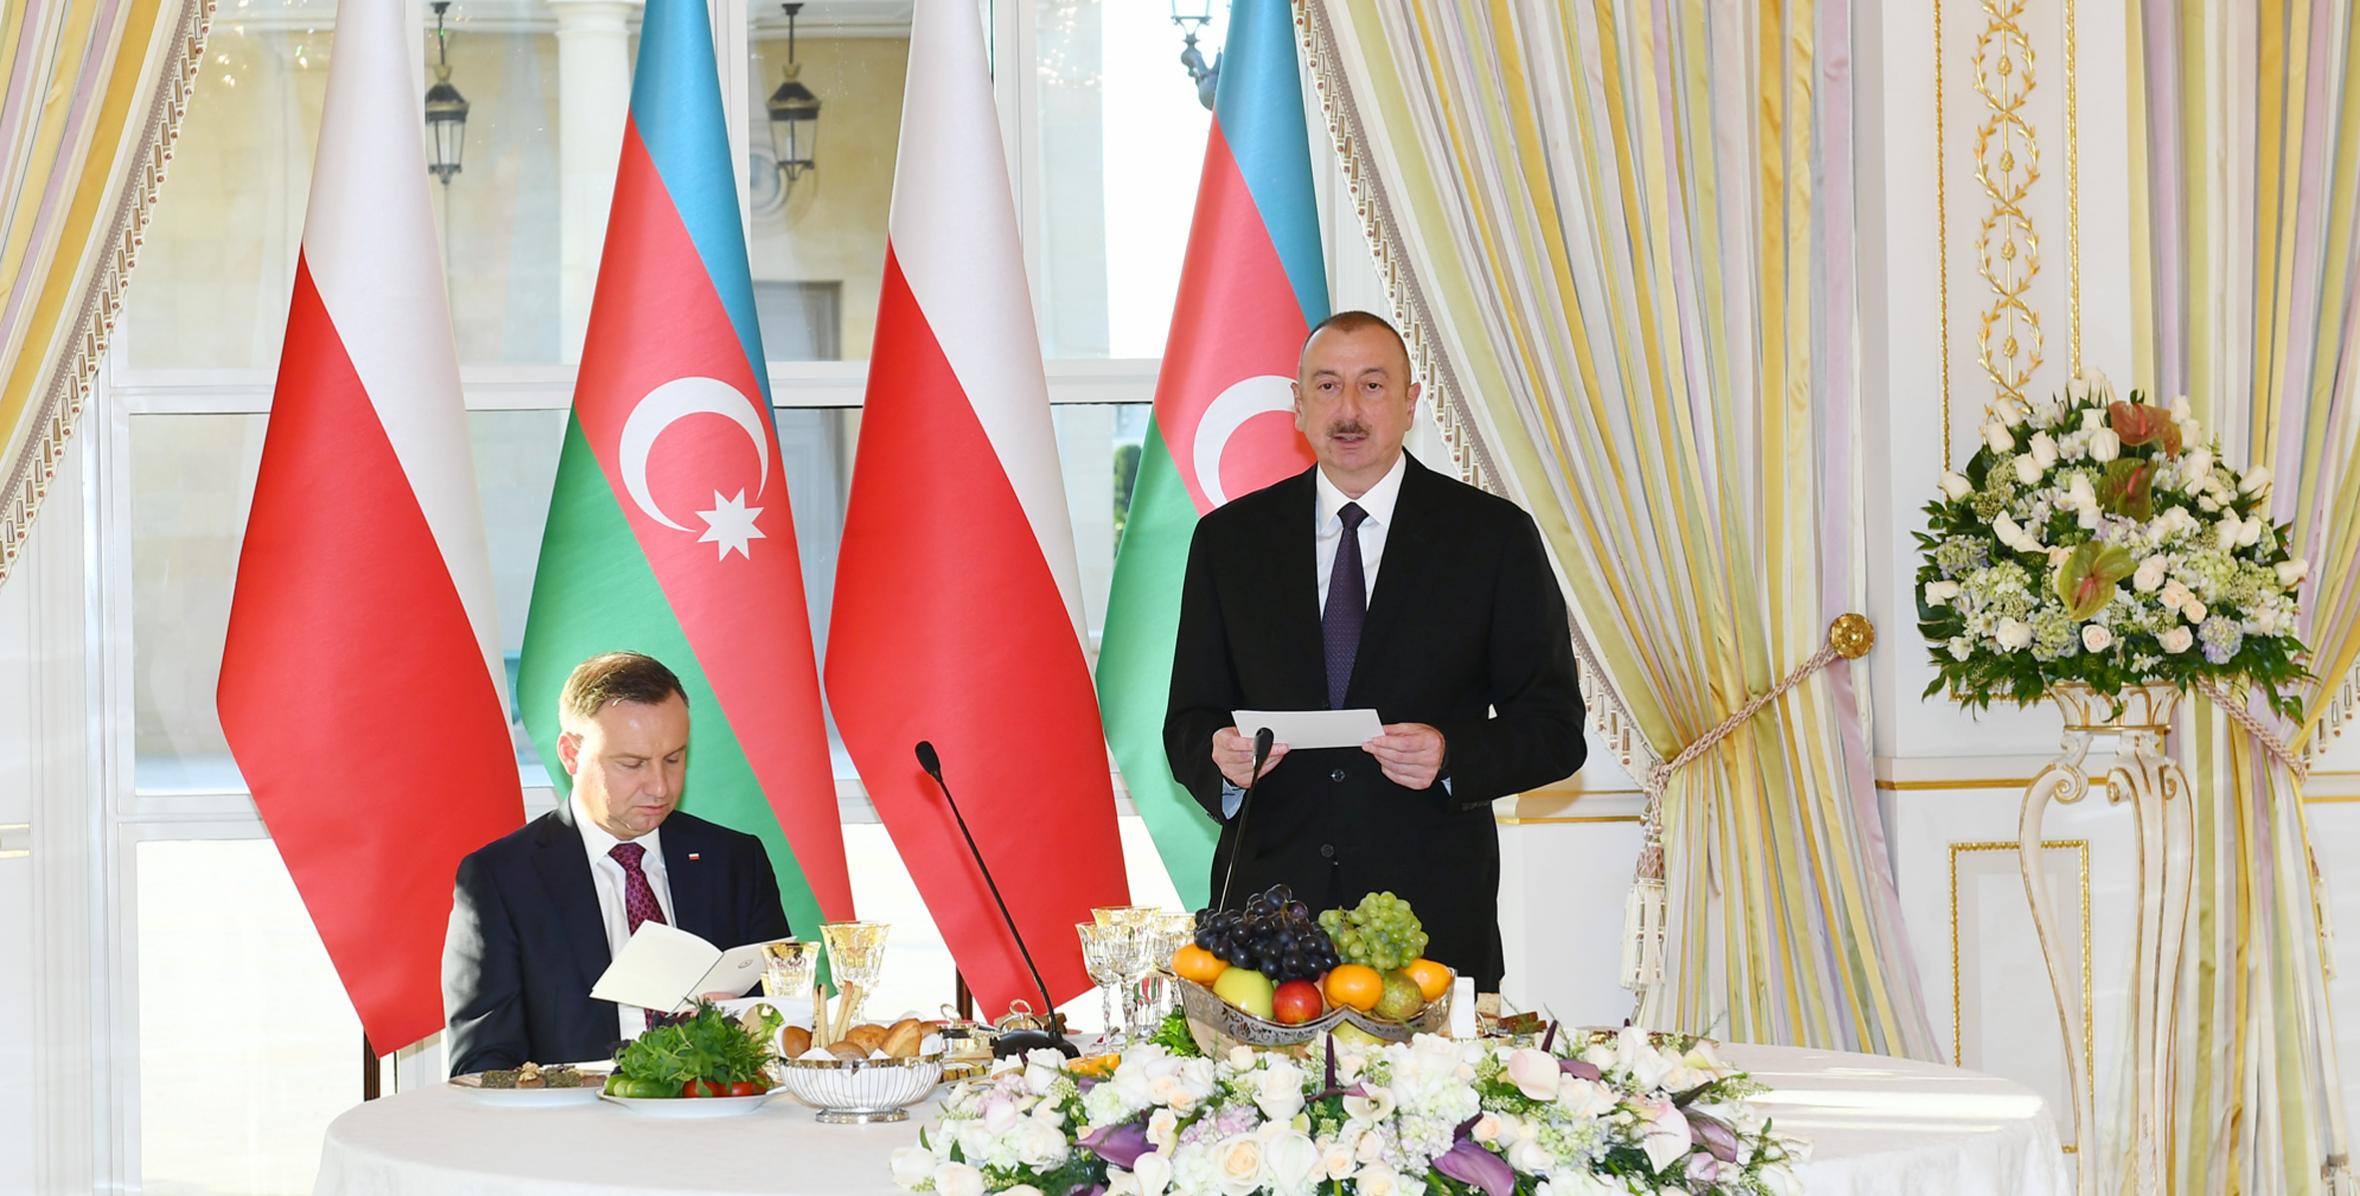 От имени Ильхама Алиева был устроен официальный прием в честь Президента Республики Польша Анджея Дуды